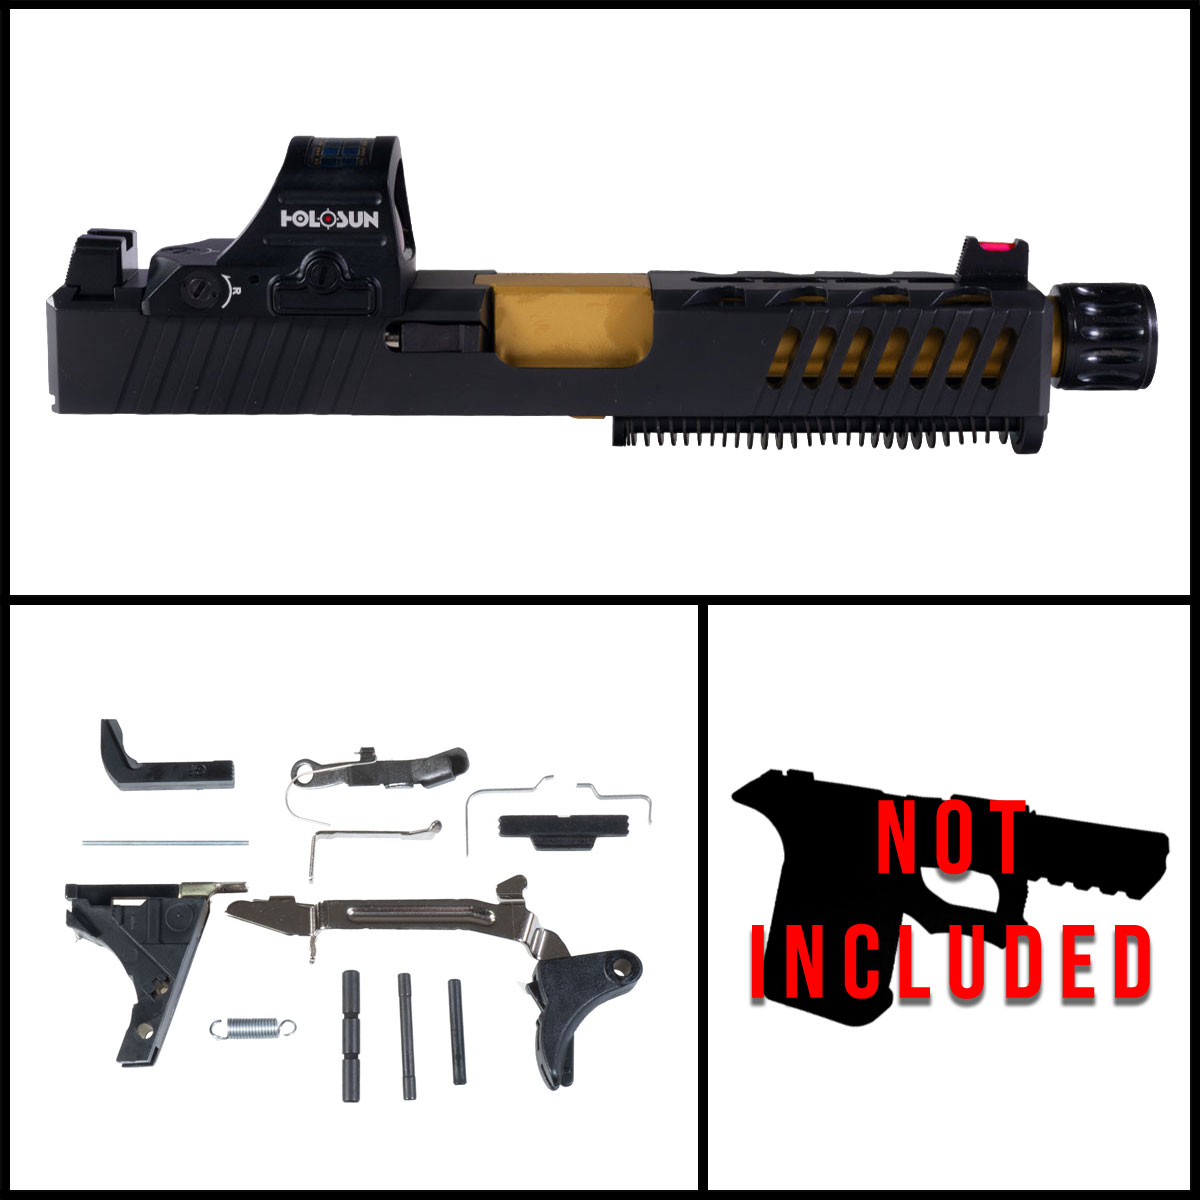 DTT 'Festina Lente w/ HS507C-X2 Red Dot' 9mm Full Pistol Build Kit (Everything Minus Frame) - Glock 19 Gen 1-3 Compatible